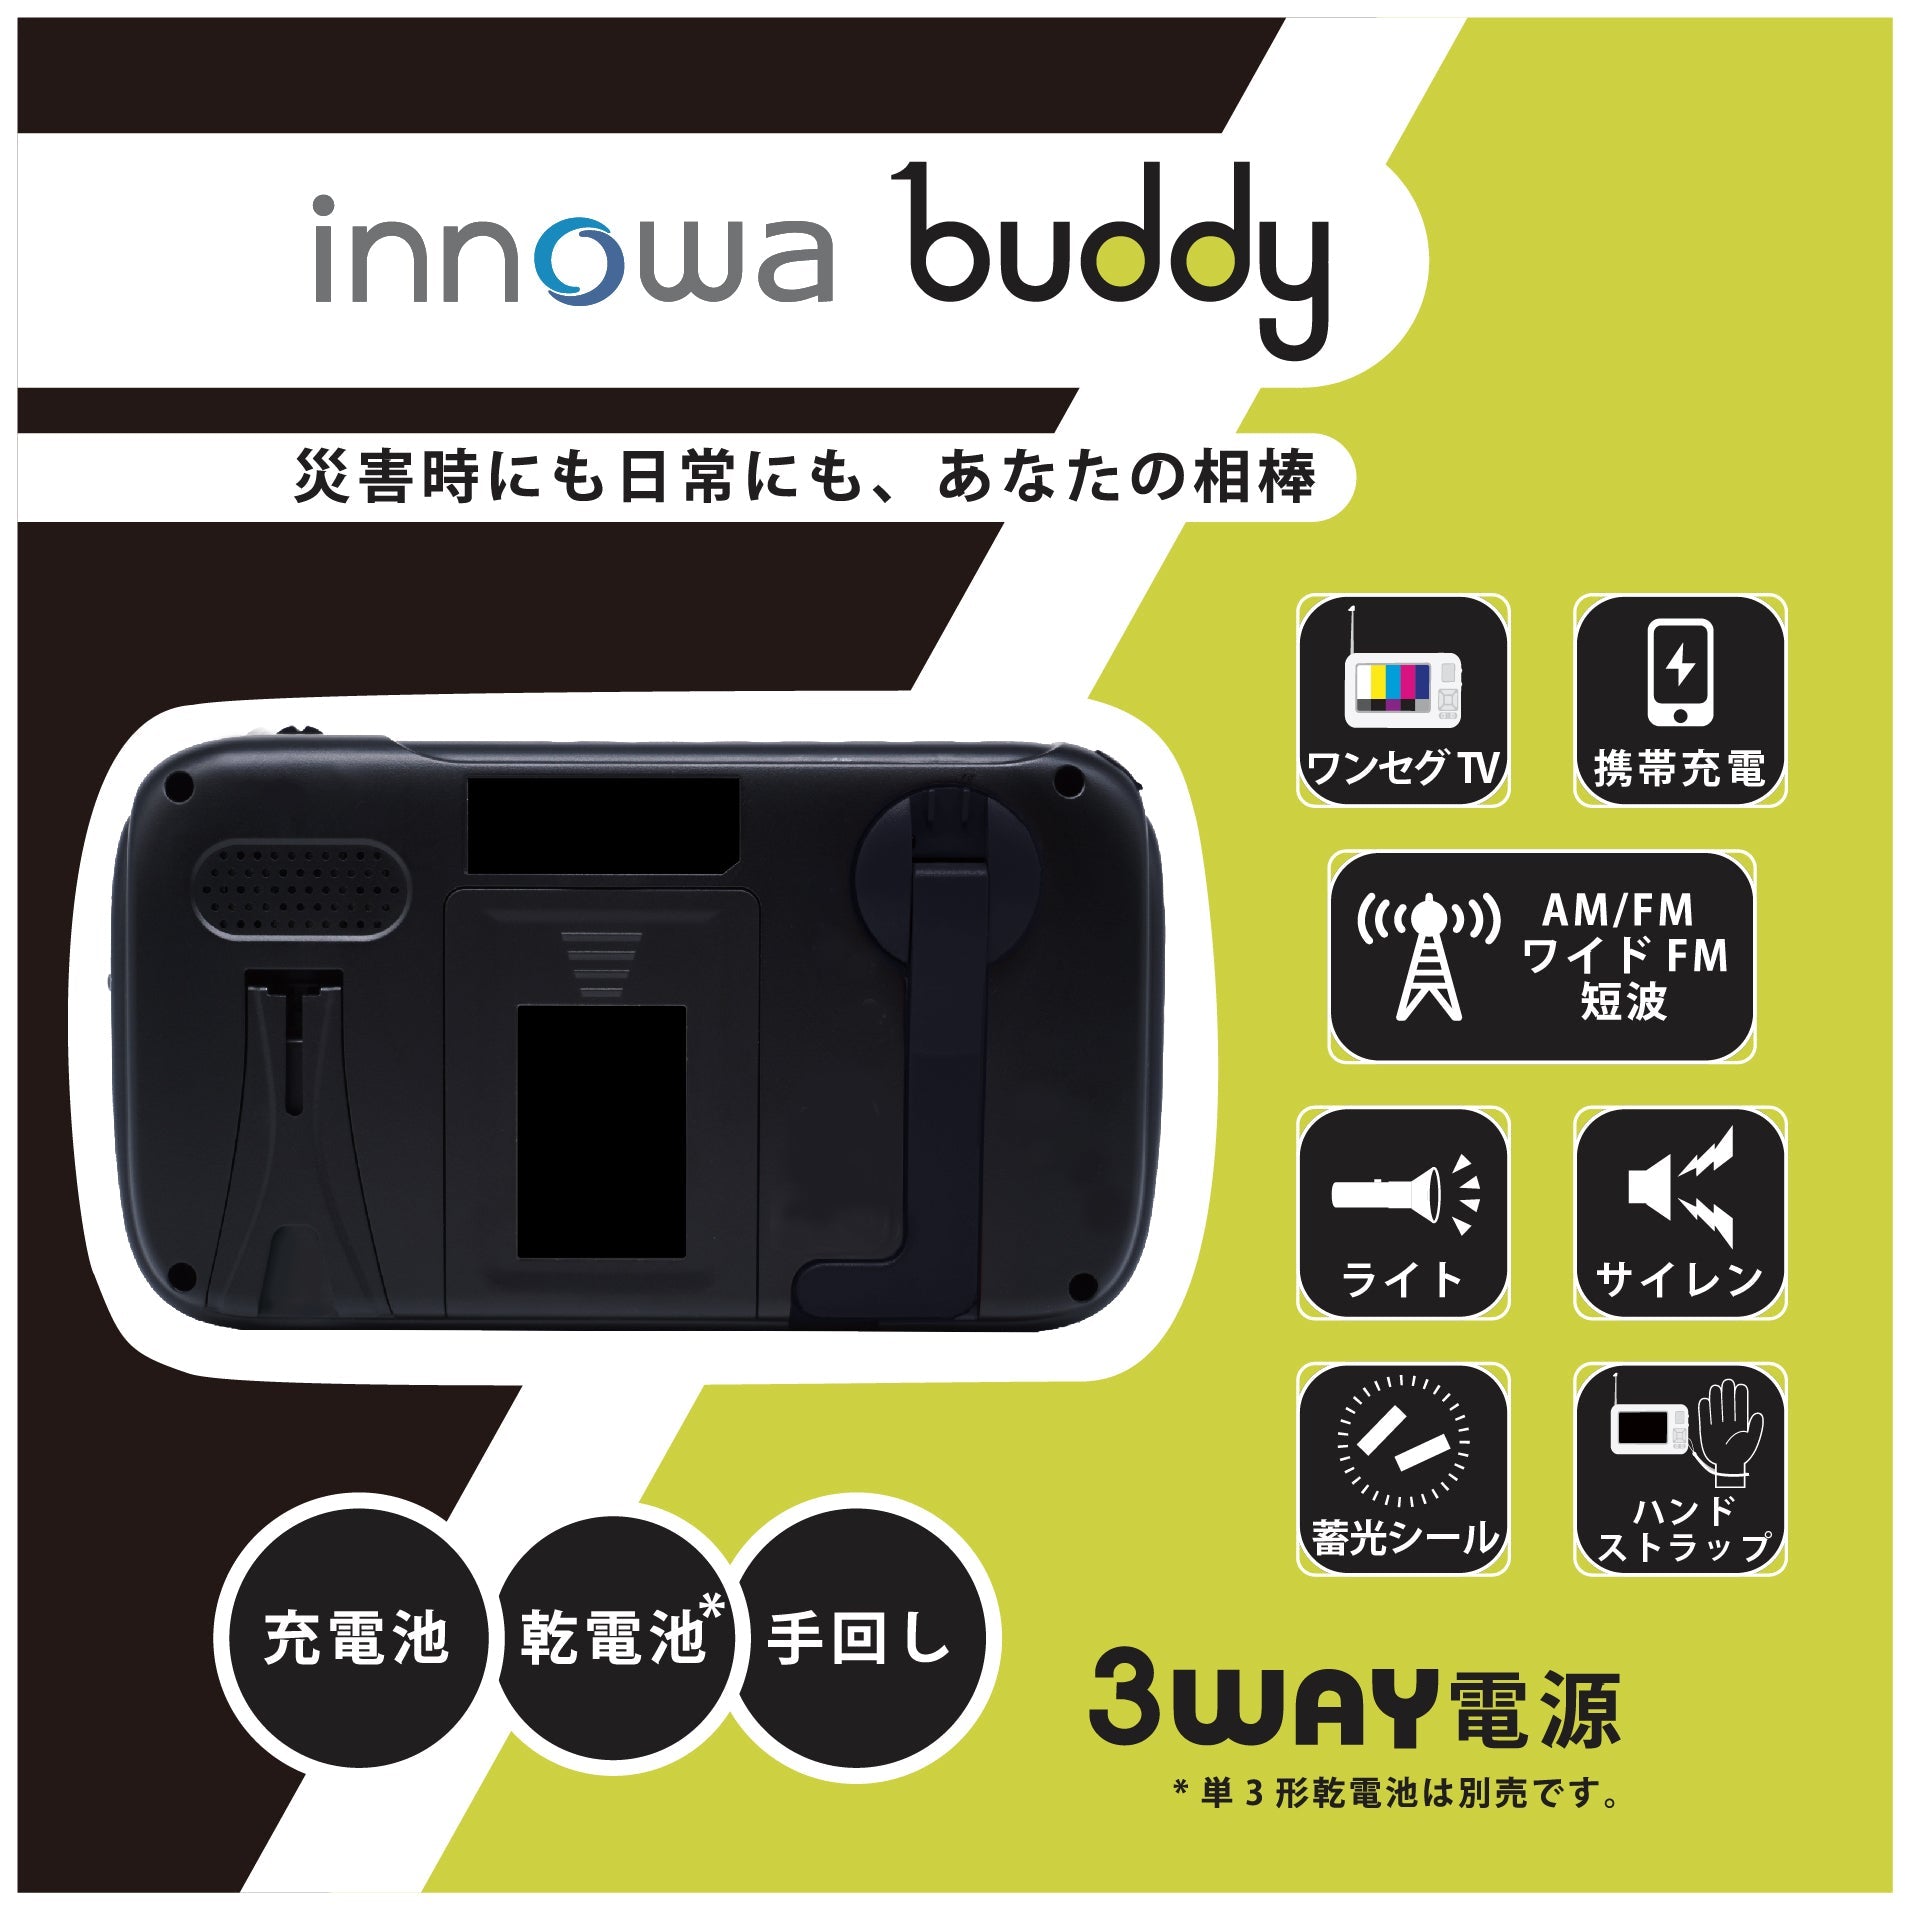 ポータブルテレビ 手回し防災ラジオ Buddy innowa ブラック BD003